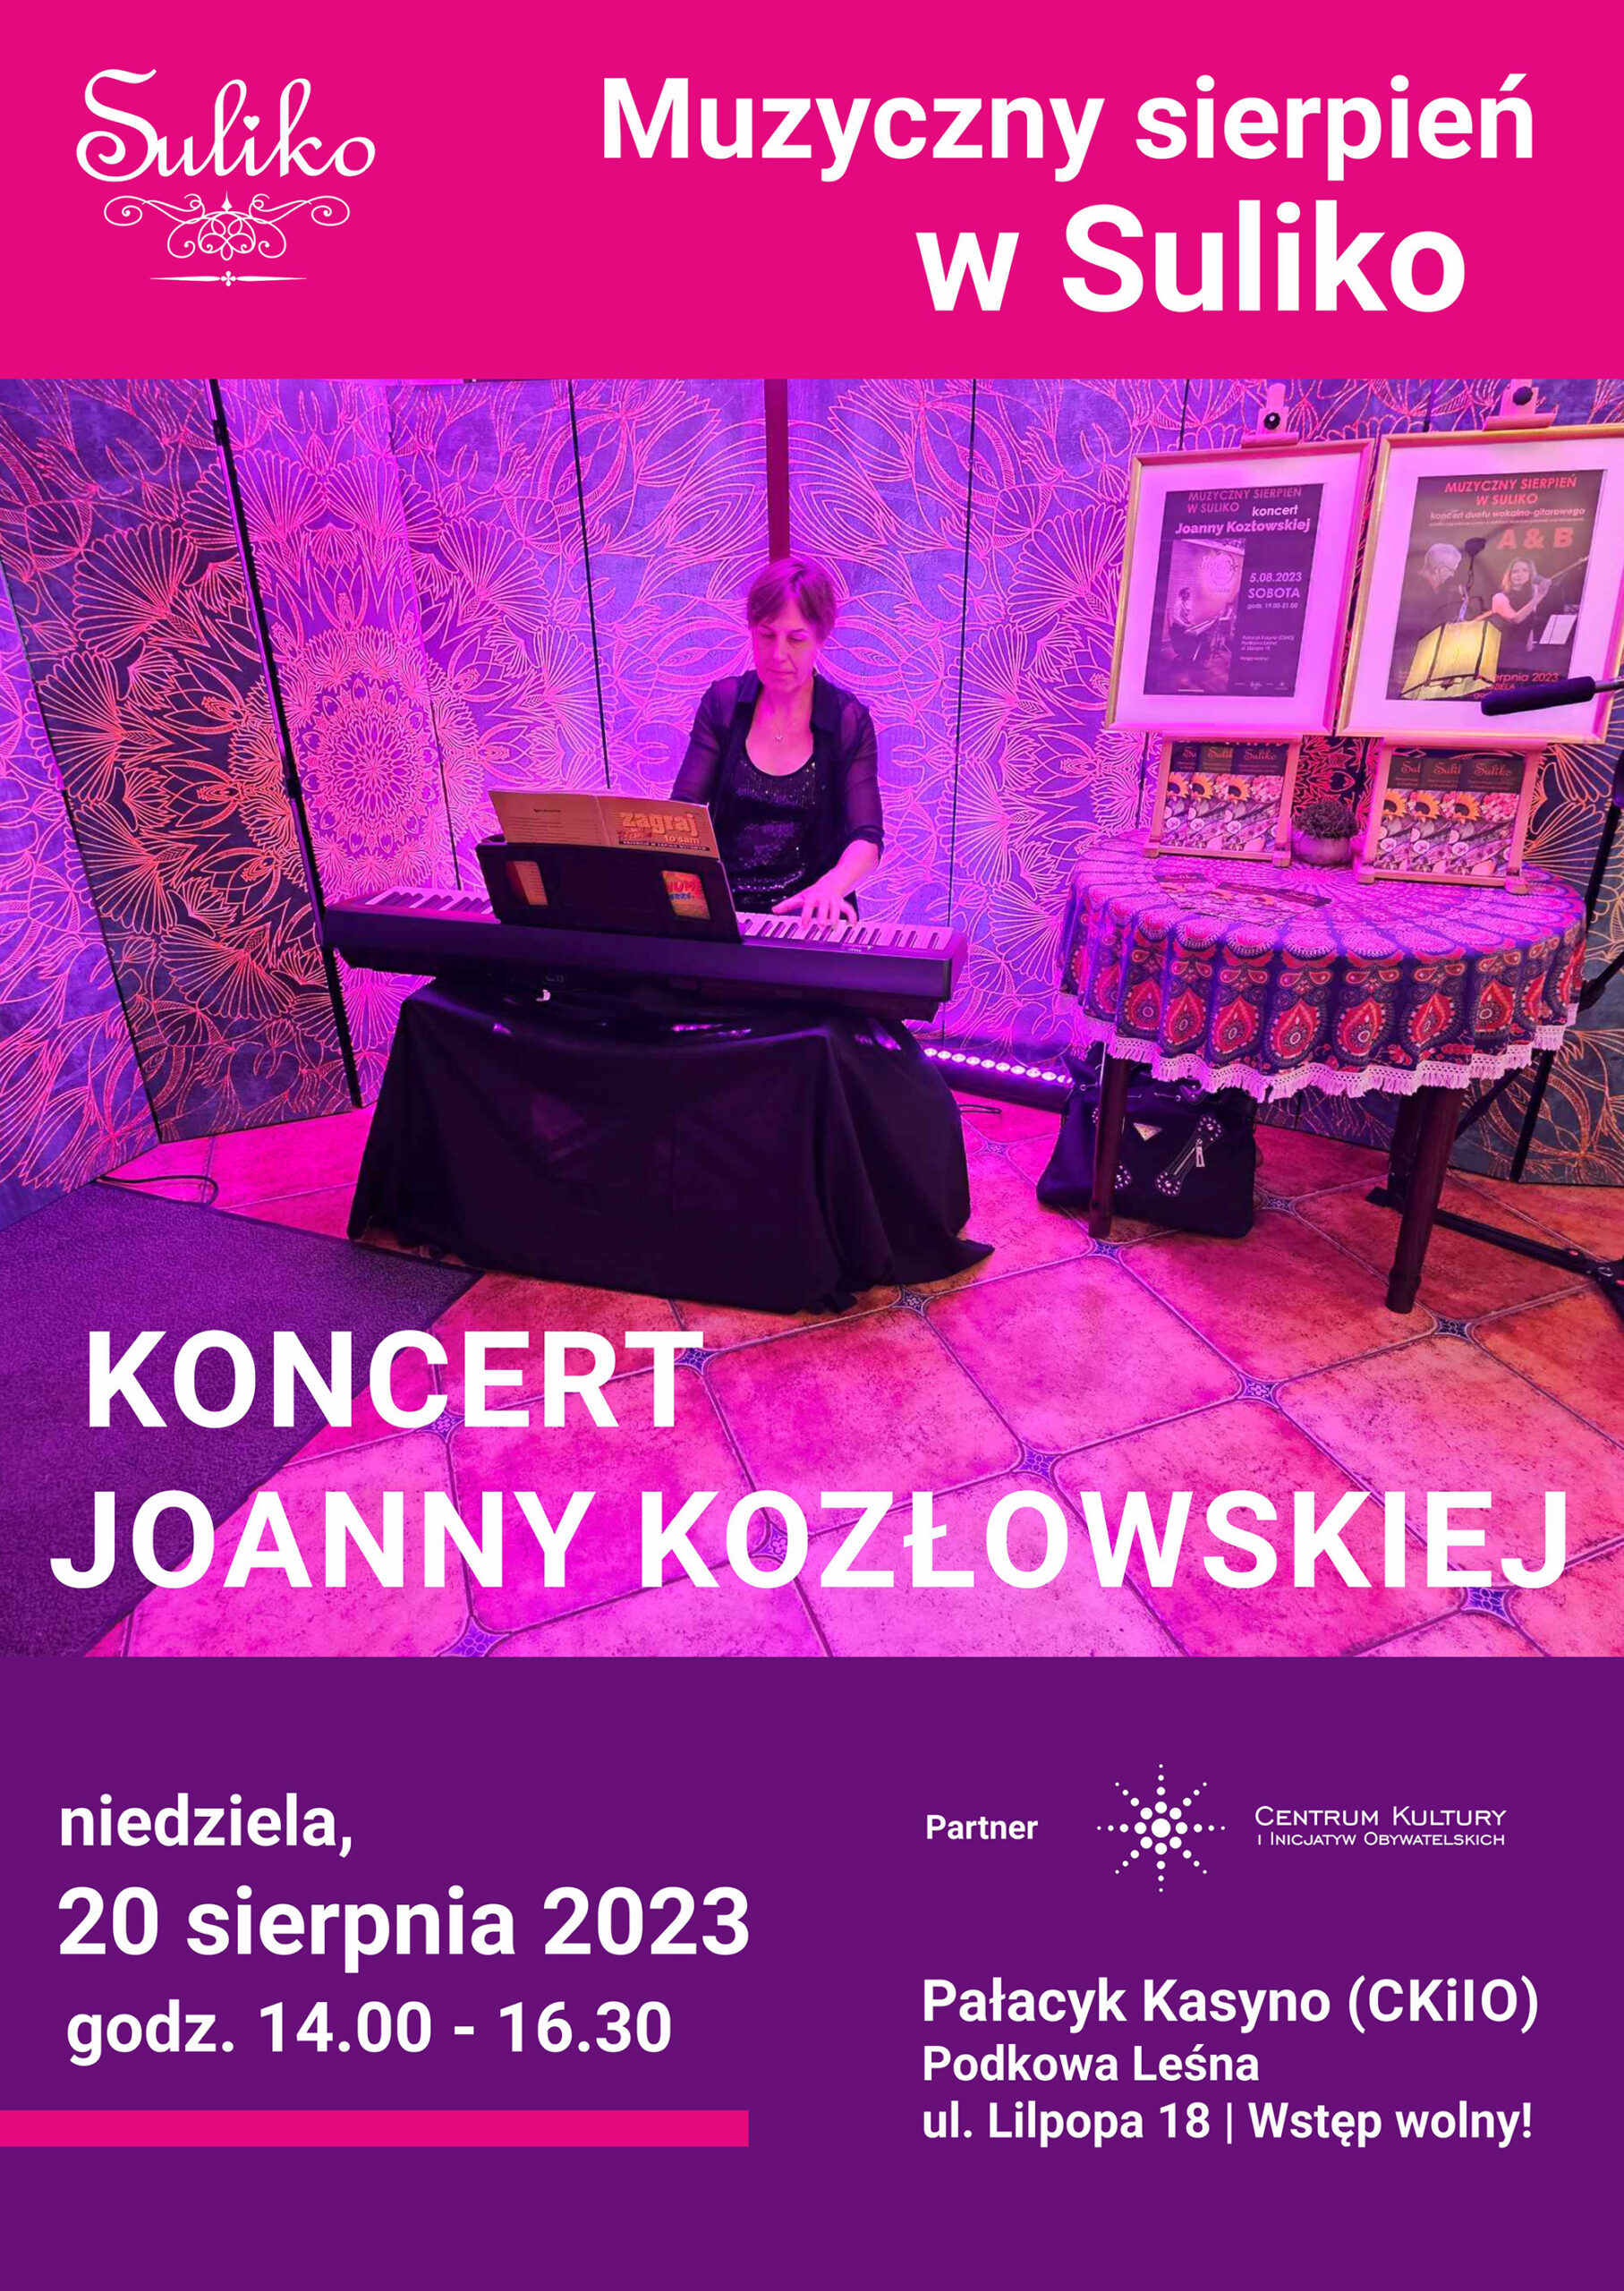 You are currently viewing MUZYCZNY SIERPIEŃ W SULIKO: Koncert Joanny Kozłowskiej